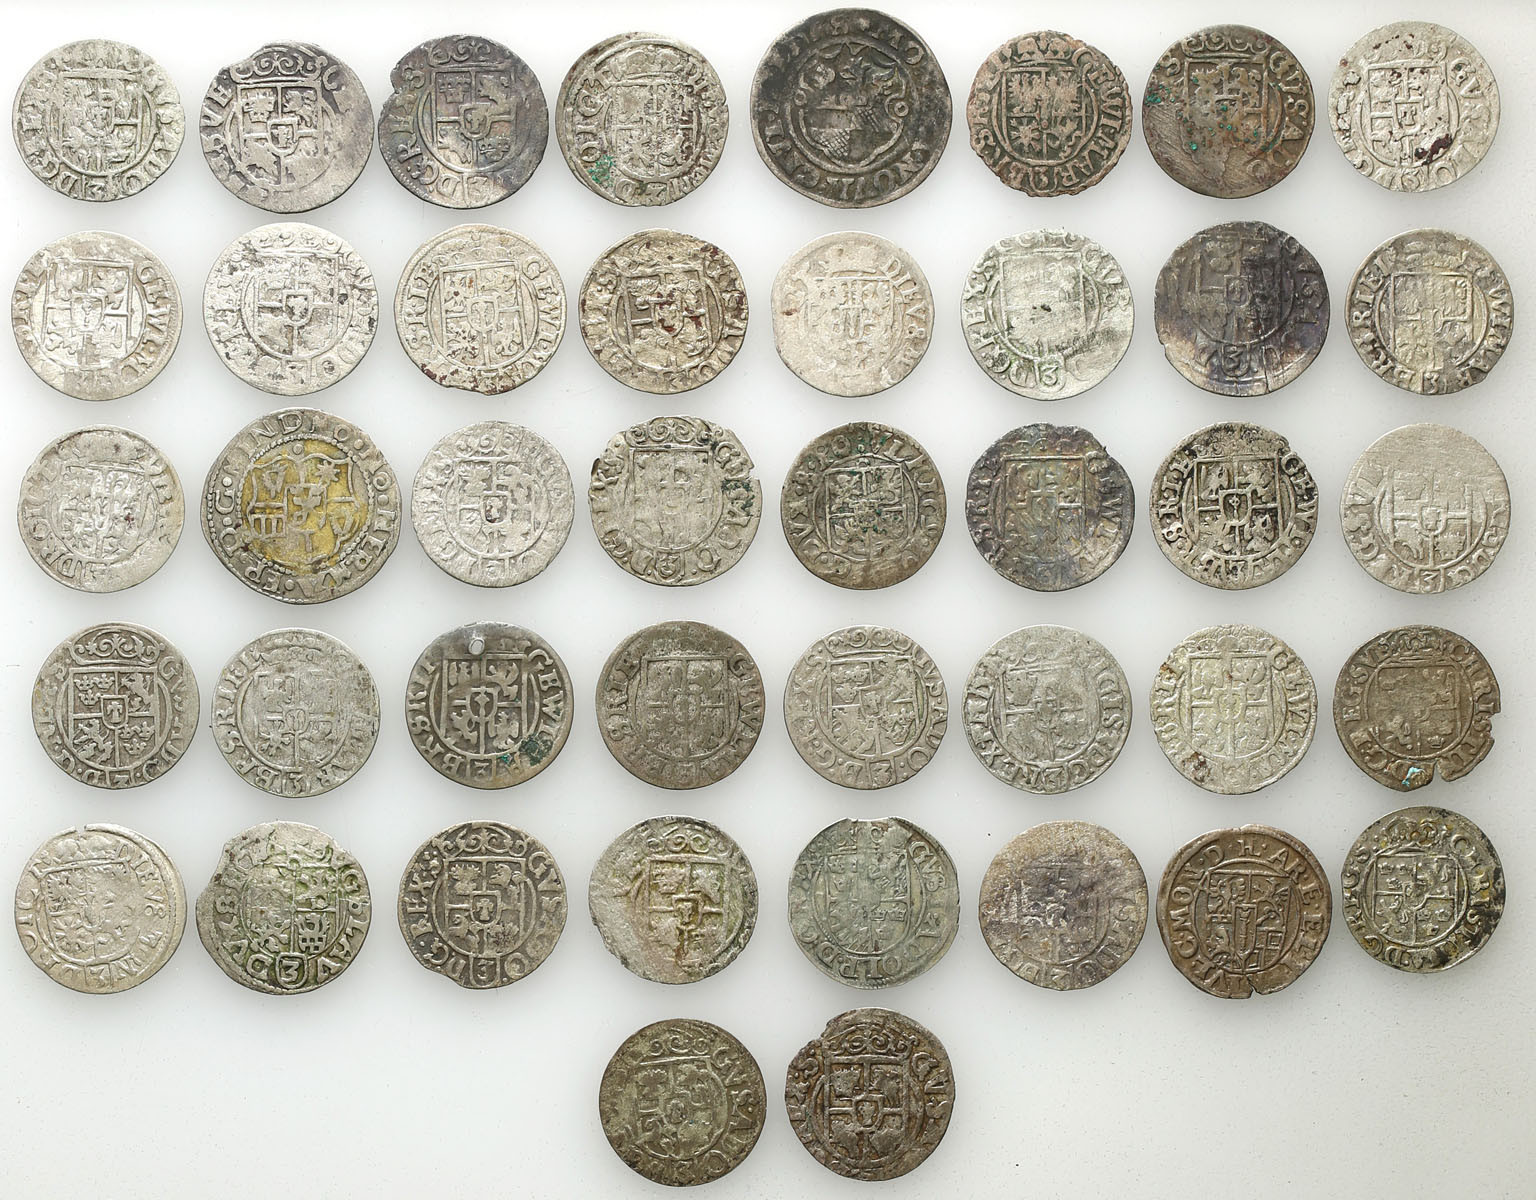 Polska, Niemcy, XVI/XVII w. Półtorak, grosz (1/21 talara), zestaw 42 monet